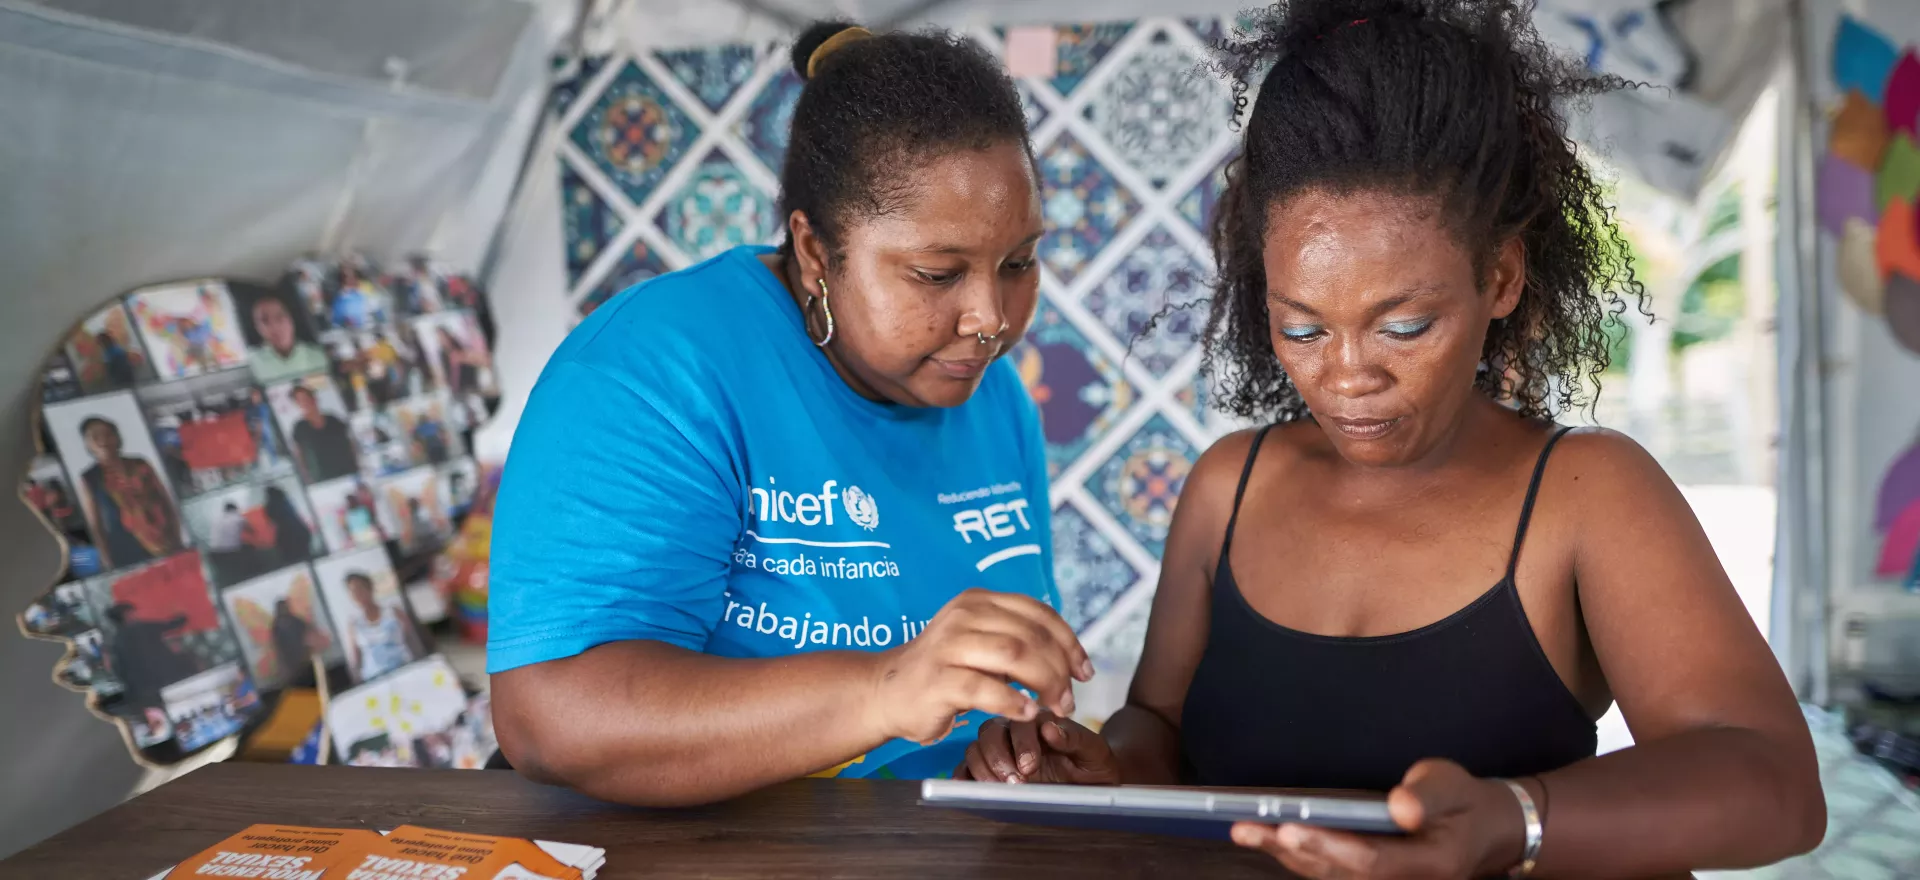 一名身穿联合国儿童基金会衬衫的妇女帮助另一名妇女使用平板电脑。